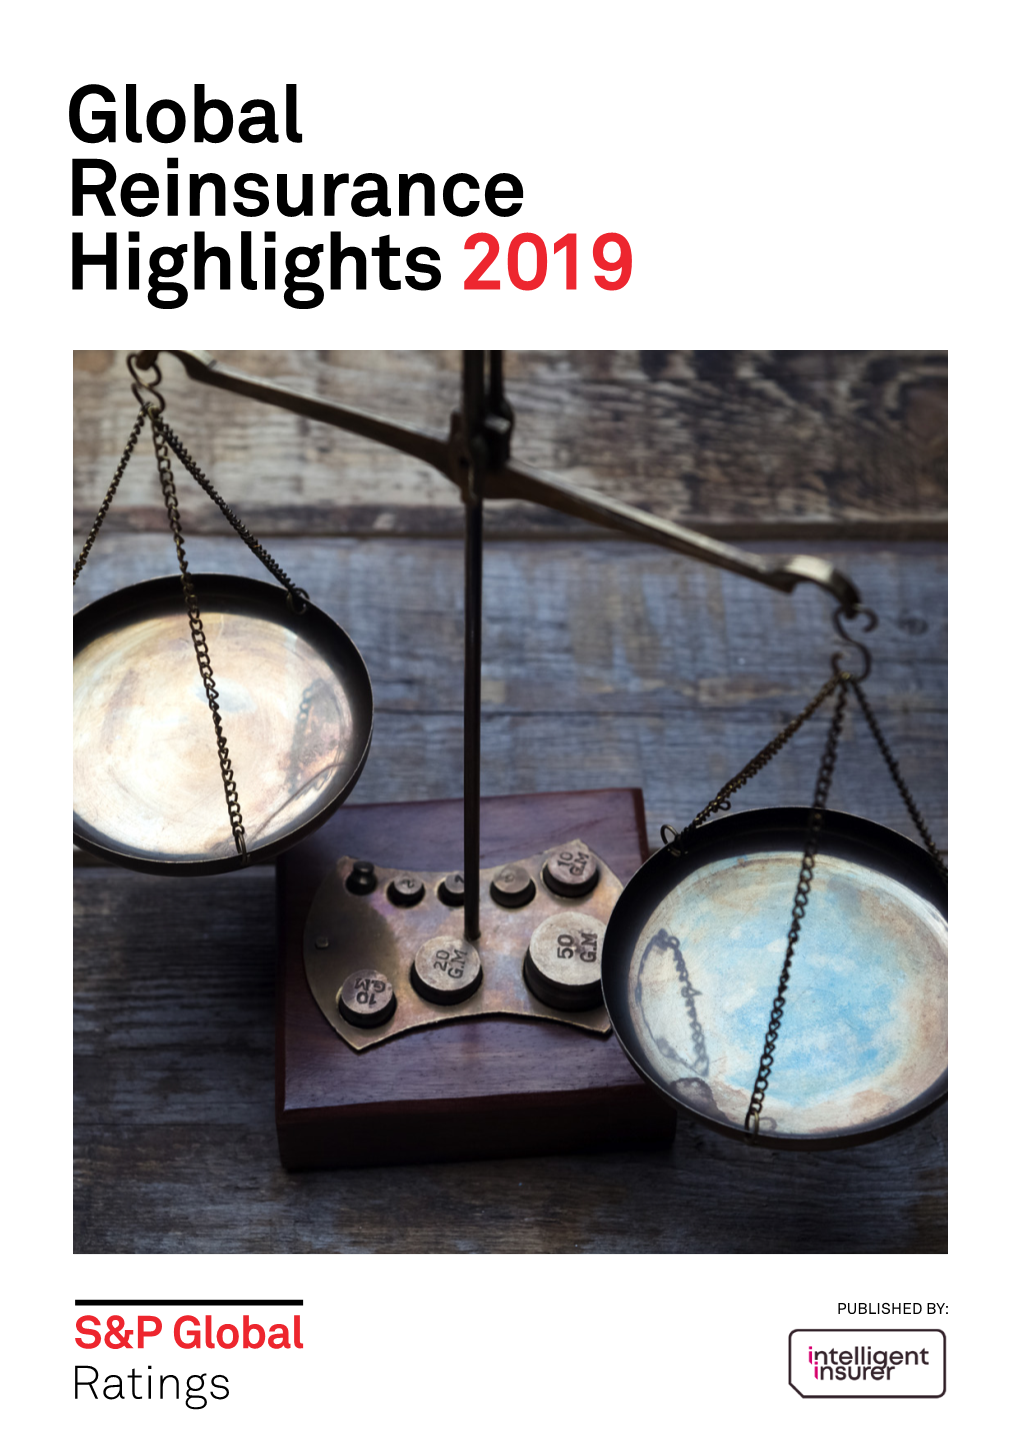 Global Reinsurance Highlights 2019